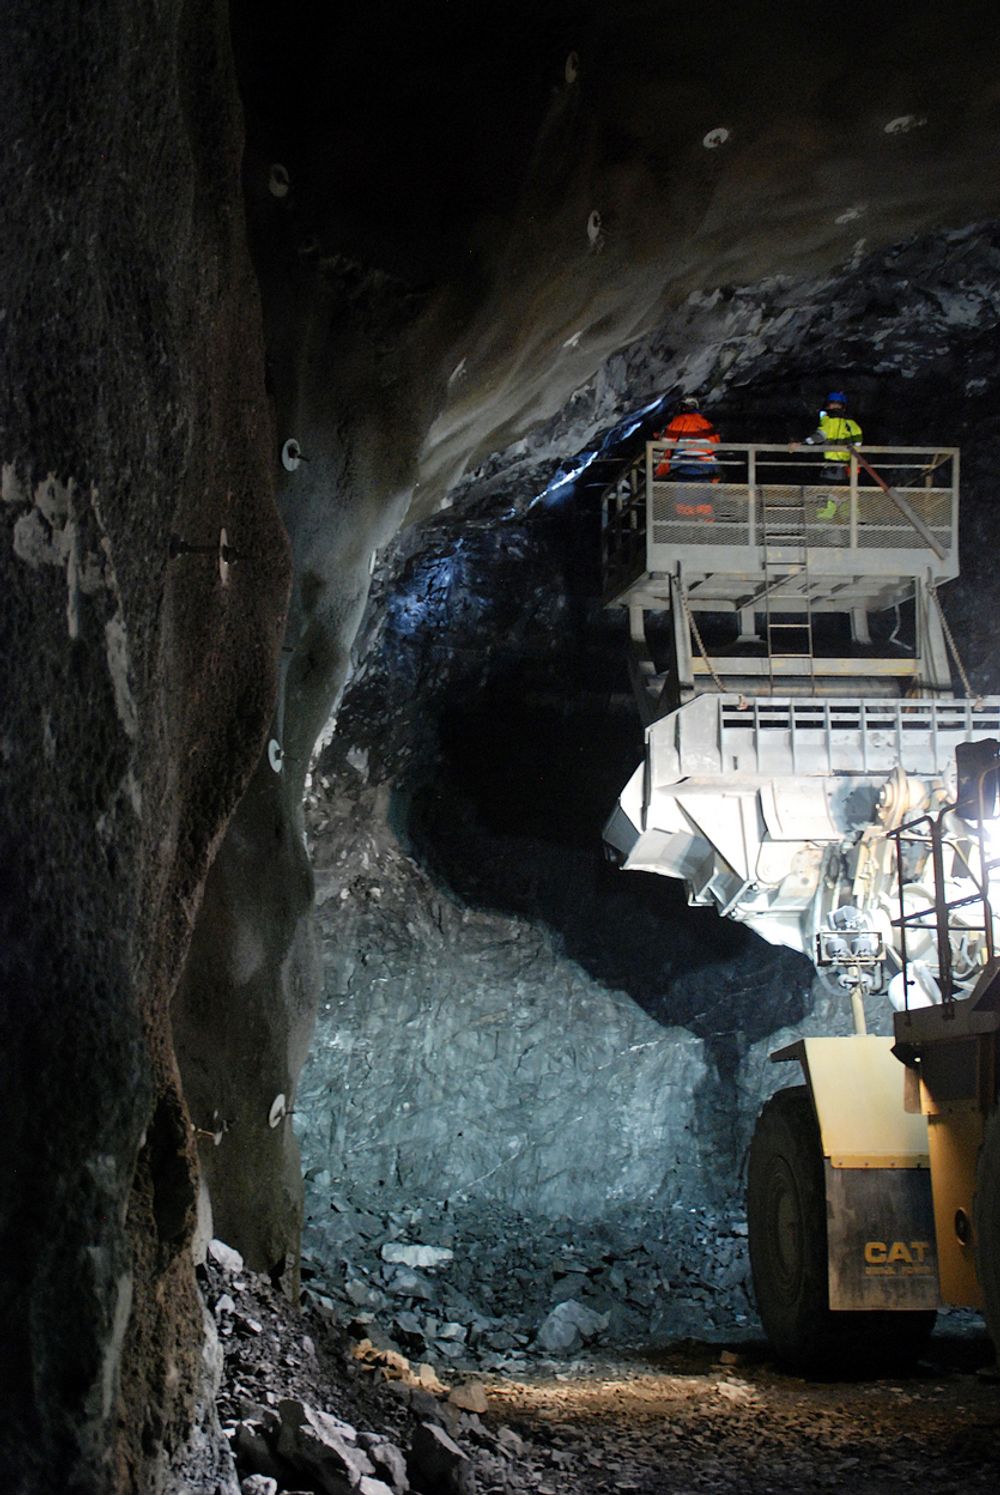 MOT GJENNOMSLAG: Skanska har drevet 420 meter tunnel i retning Fossveien på entreprisen Sandvika Øst. Allerede i februar/mars satser de på gjennomslag. Det er et par måneder tidligere enn det som var planlagt i utgangspunktet.